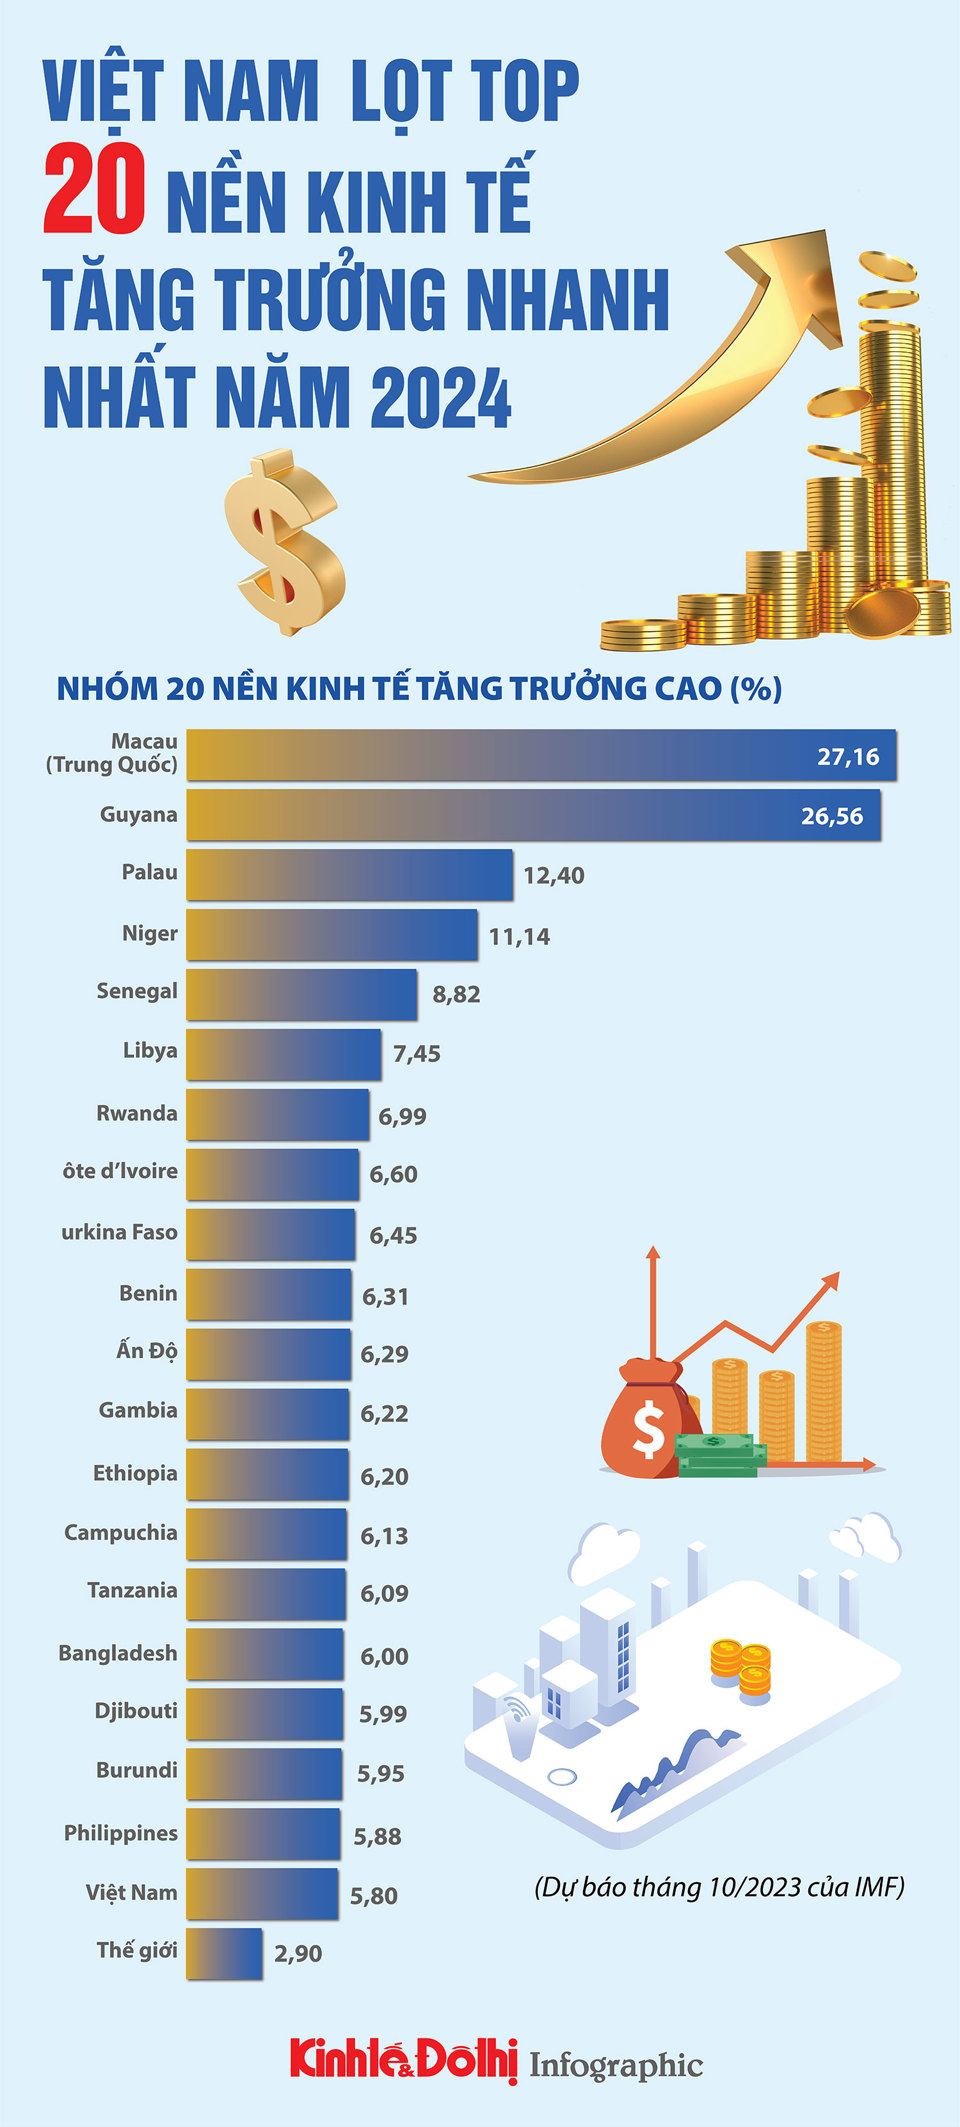 Việt Nam lọt top 20 nền kinh tế tăng trưởng nhanh nhất năm 2024 - Ảnh 1